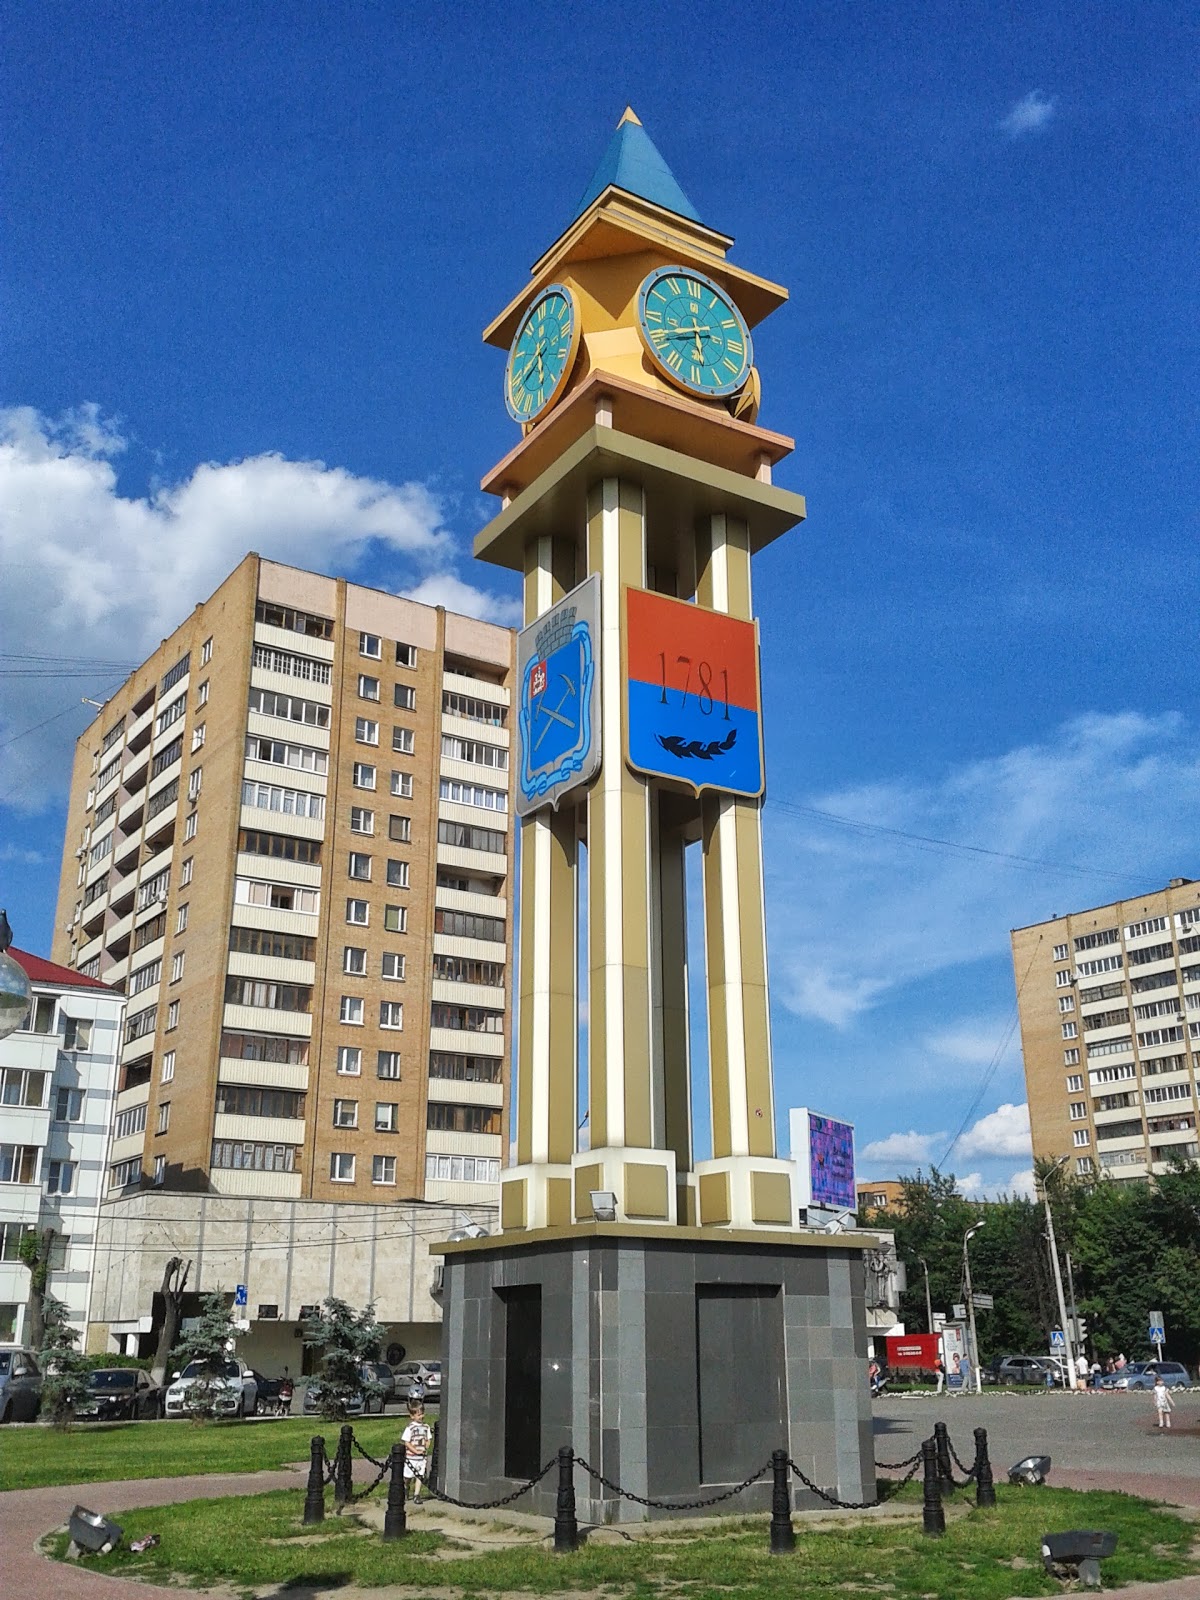 Подольск башня с часами